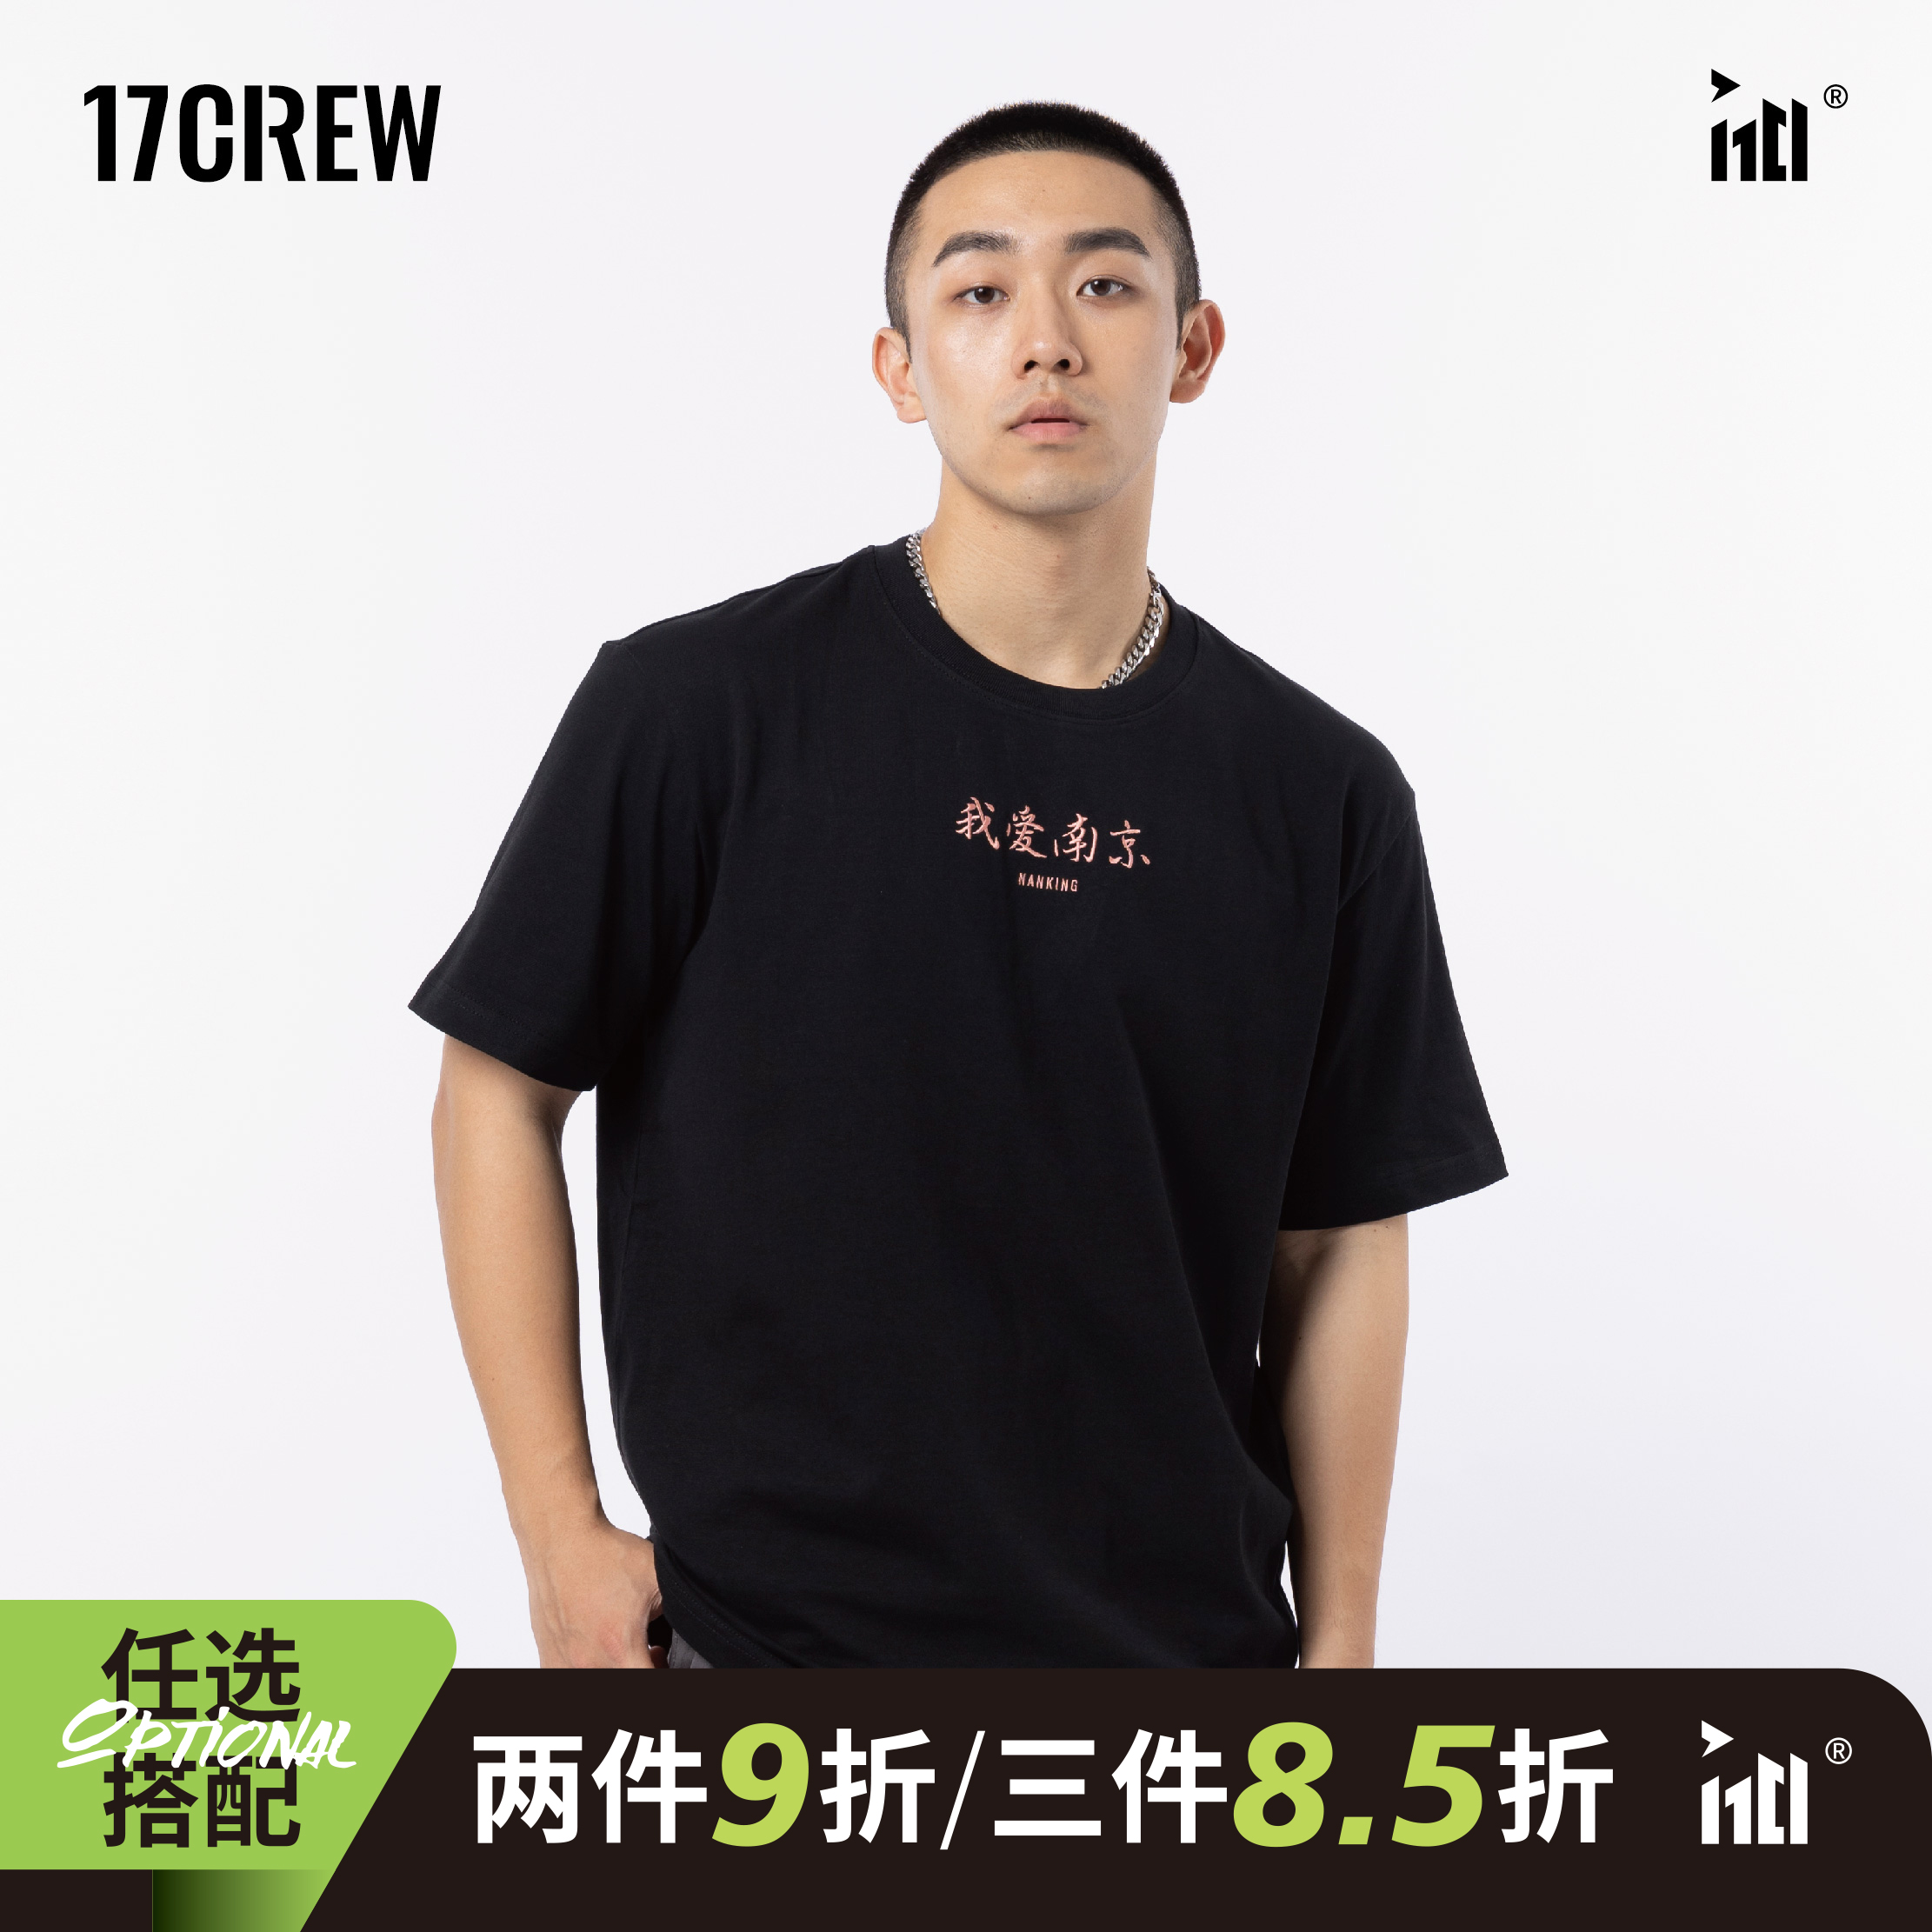 潮流圆领男女同款 t恤短袖 17CREW南京系列夏季 宽松半袖